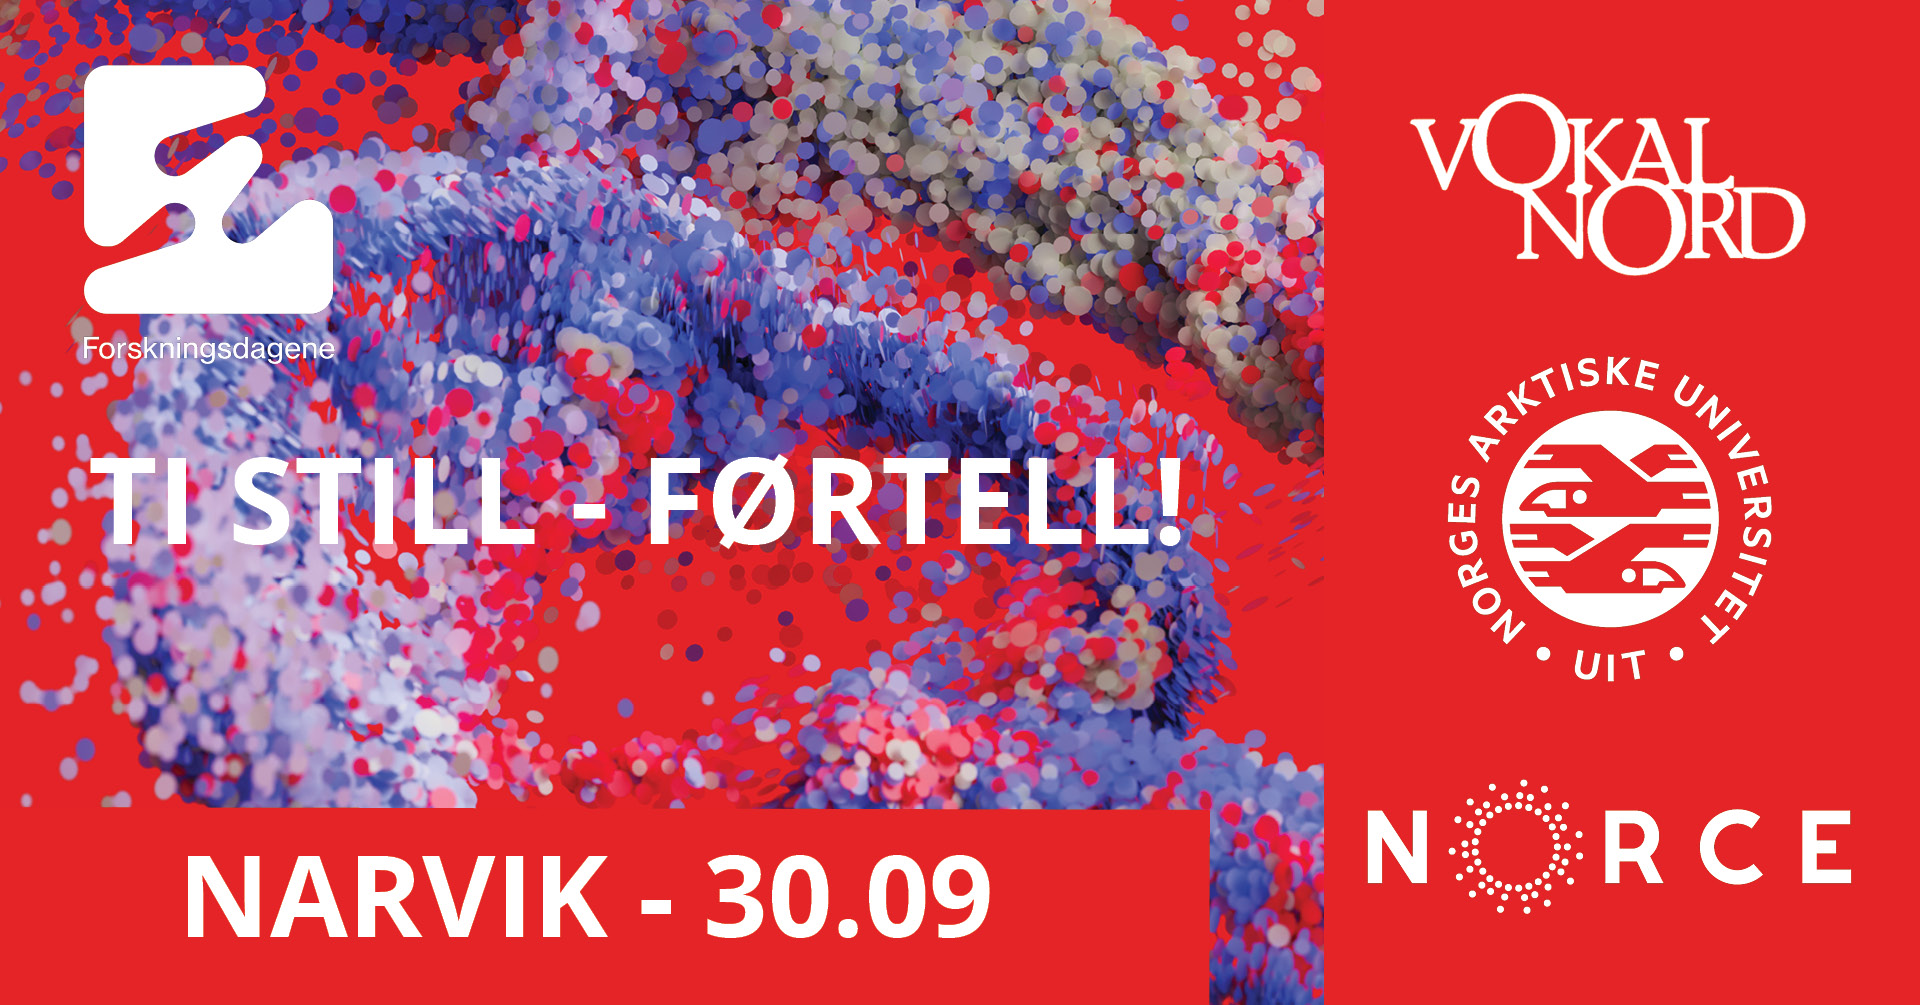 Illustrasjons-/bannerbilde for Ti Still – førtell! Kunst og kunnskap med Vokal Nord og forskere!